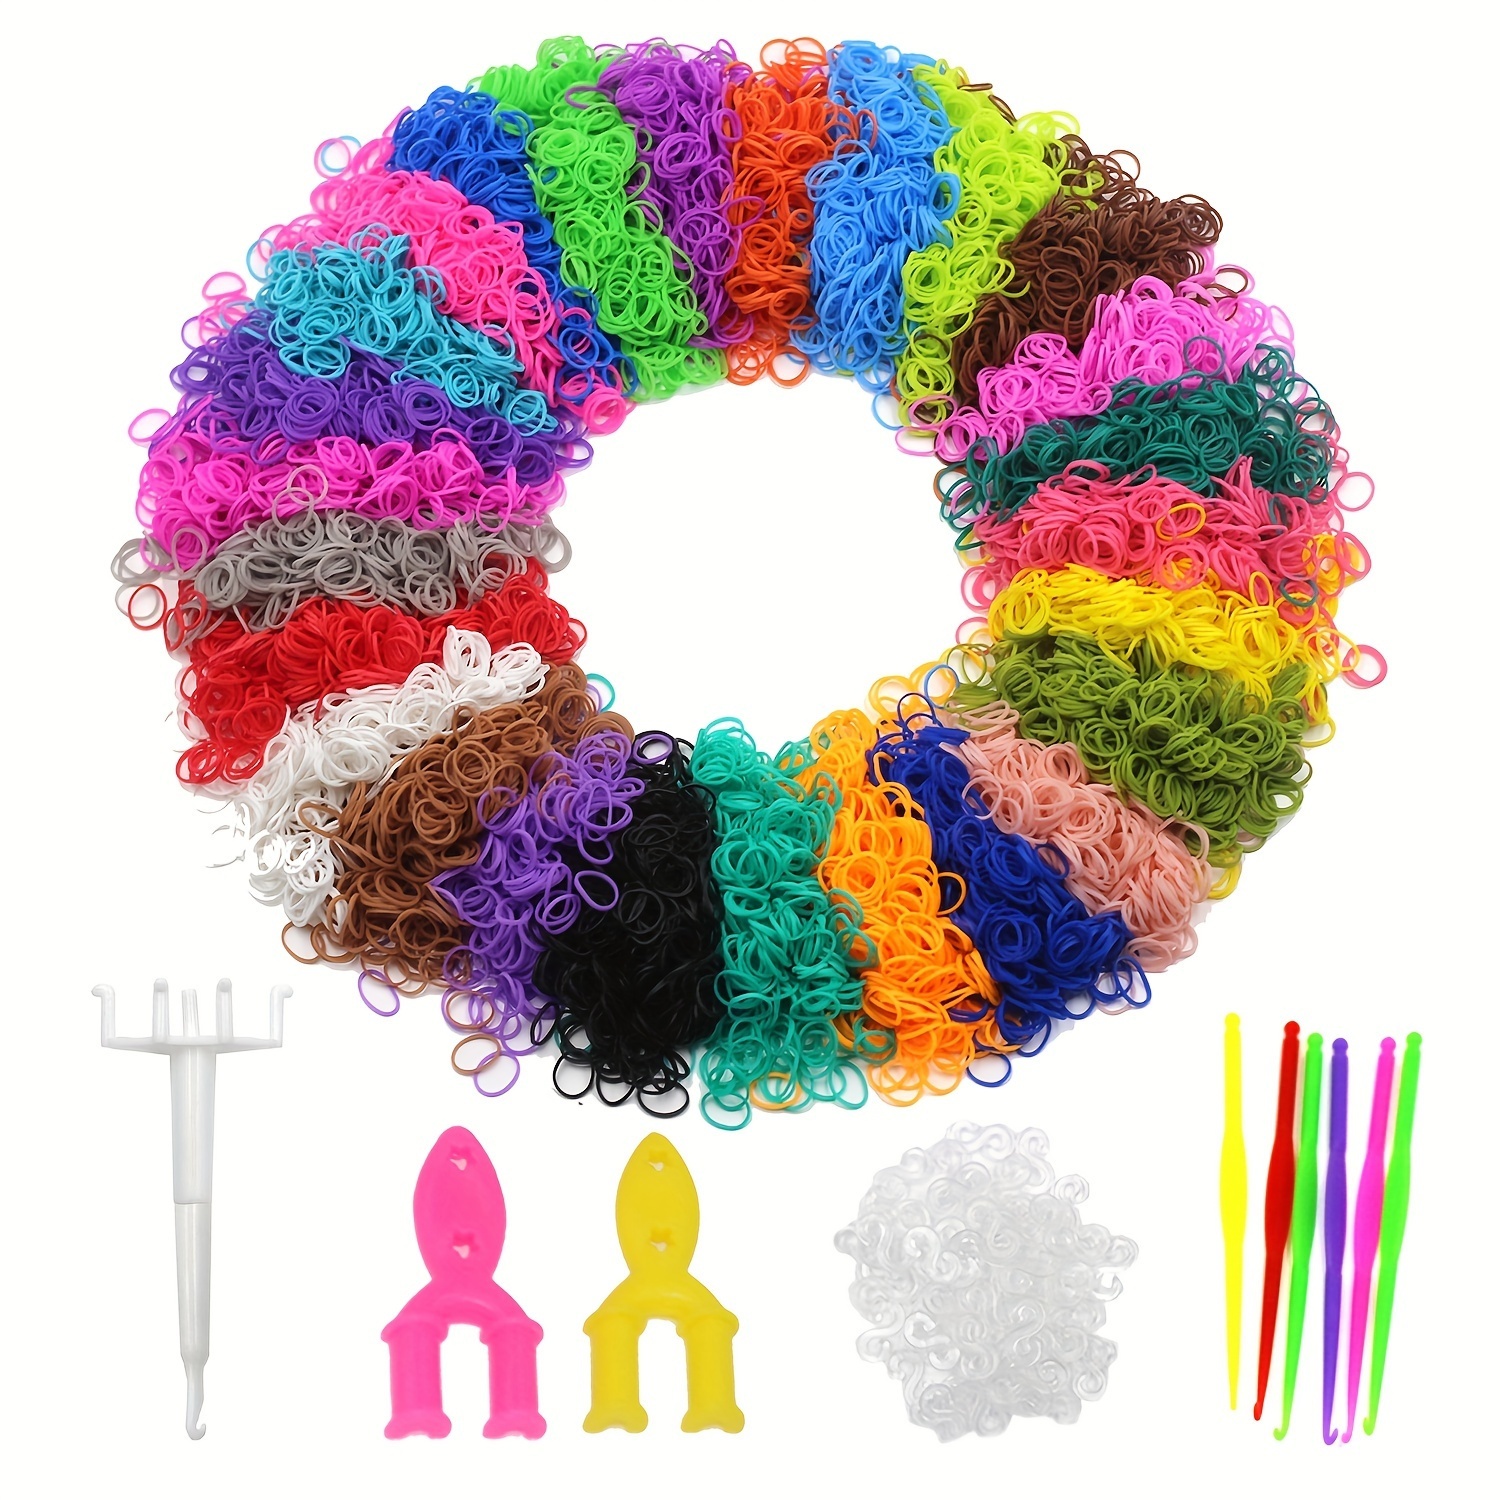 VIDÉO - Rainbow Loom : comment fabriquer son propre bracelet star de l'été